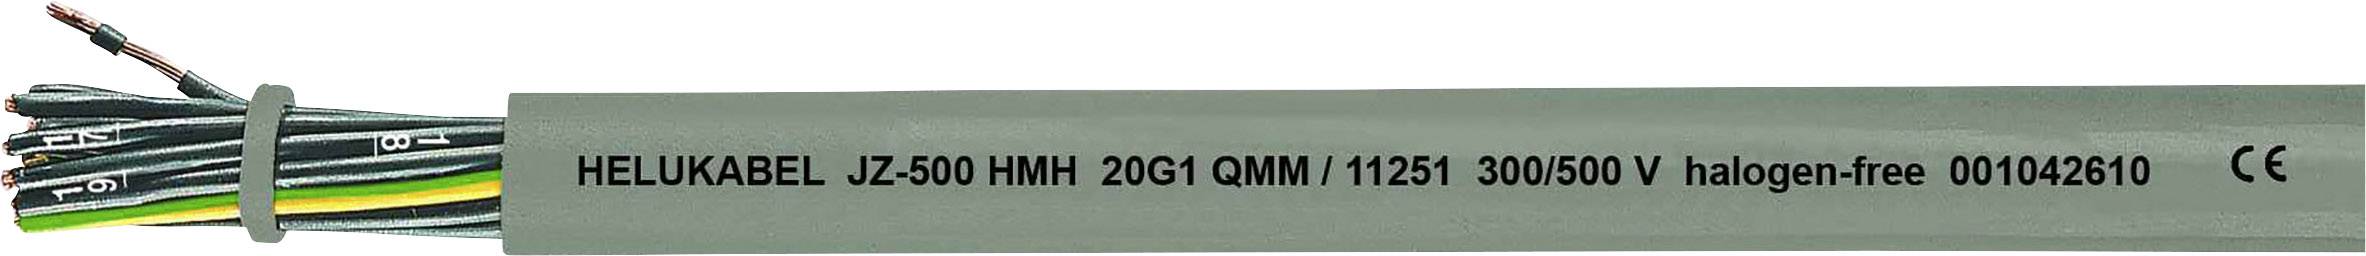 HELUKABEL JZ-500 HMH Steuerleitung 3 G 1 mm² Grau 11242-1000 1000 m